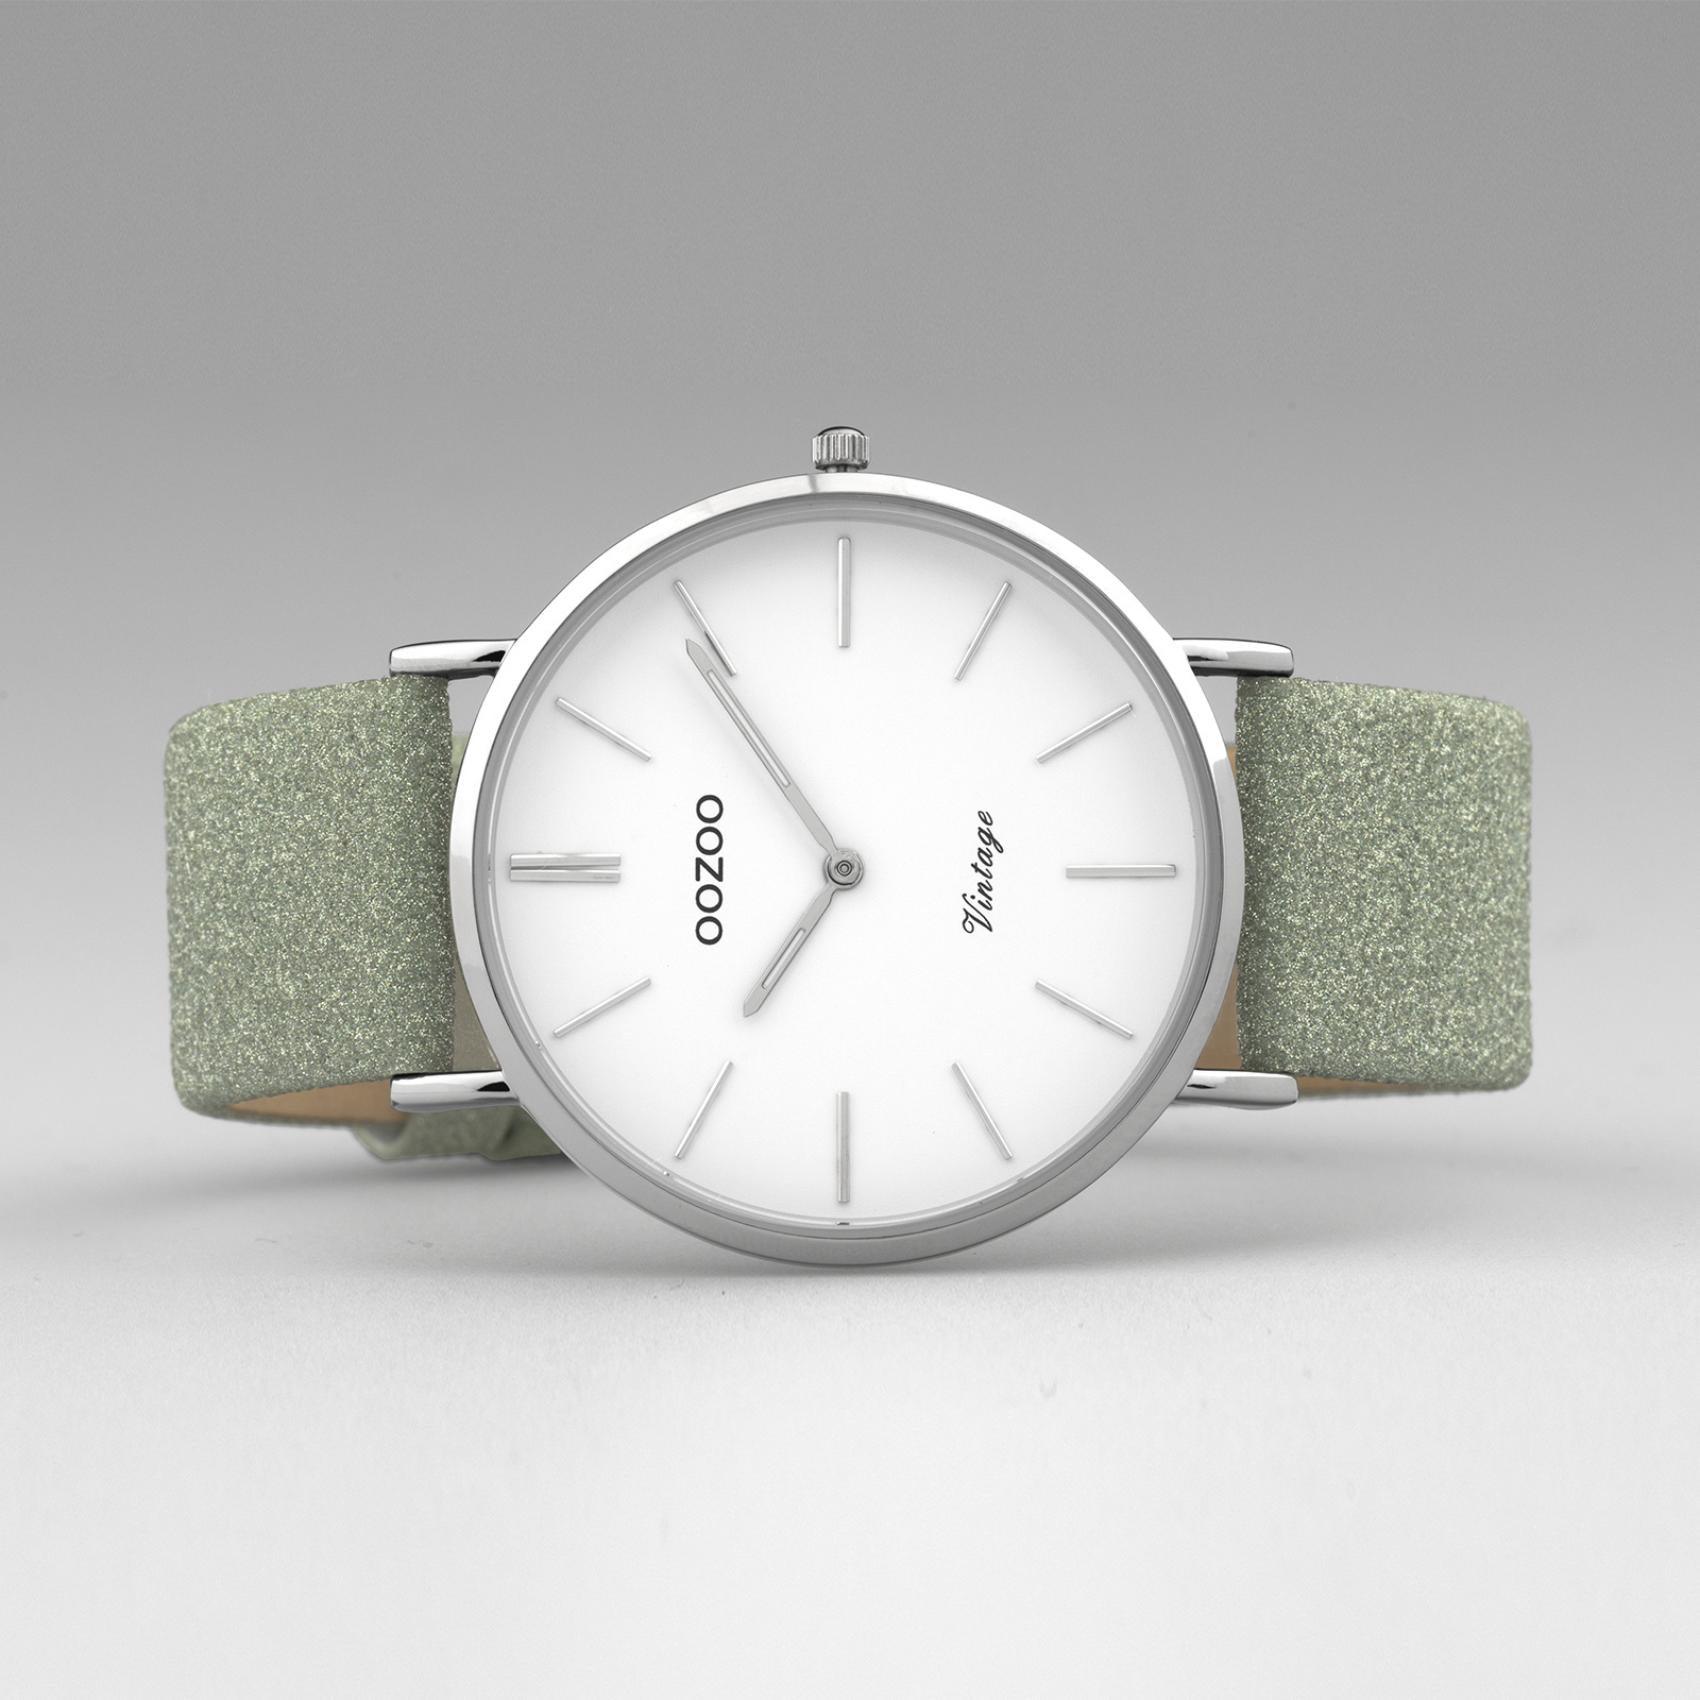 Στρογγυλό ρολόι Oozoo Vintage C20146 με πράσινο δερμάτινο λουράκι,άσπρο καντράν διαμέτρου 43mm και μηχανισμό μπαταρίας quartz.